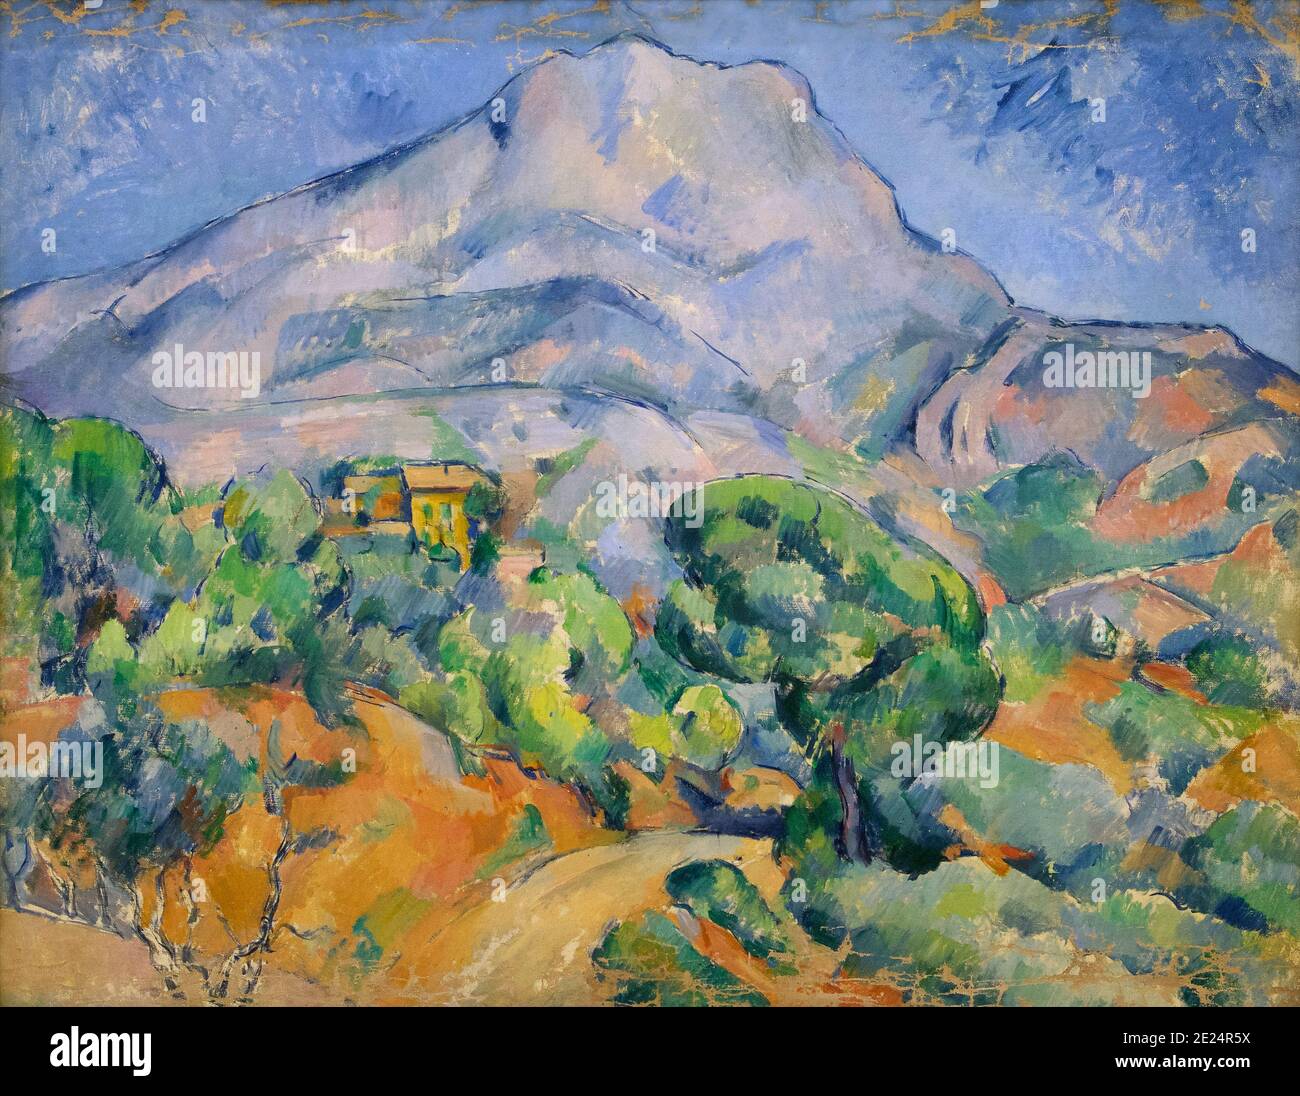 Route près du Mont Sainte-victoire, Paul Cézanne, vers 1902, Musée de l'Ermitage, Saint-Pétersbourg, Russie Banque D'Images